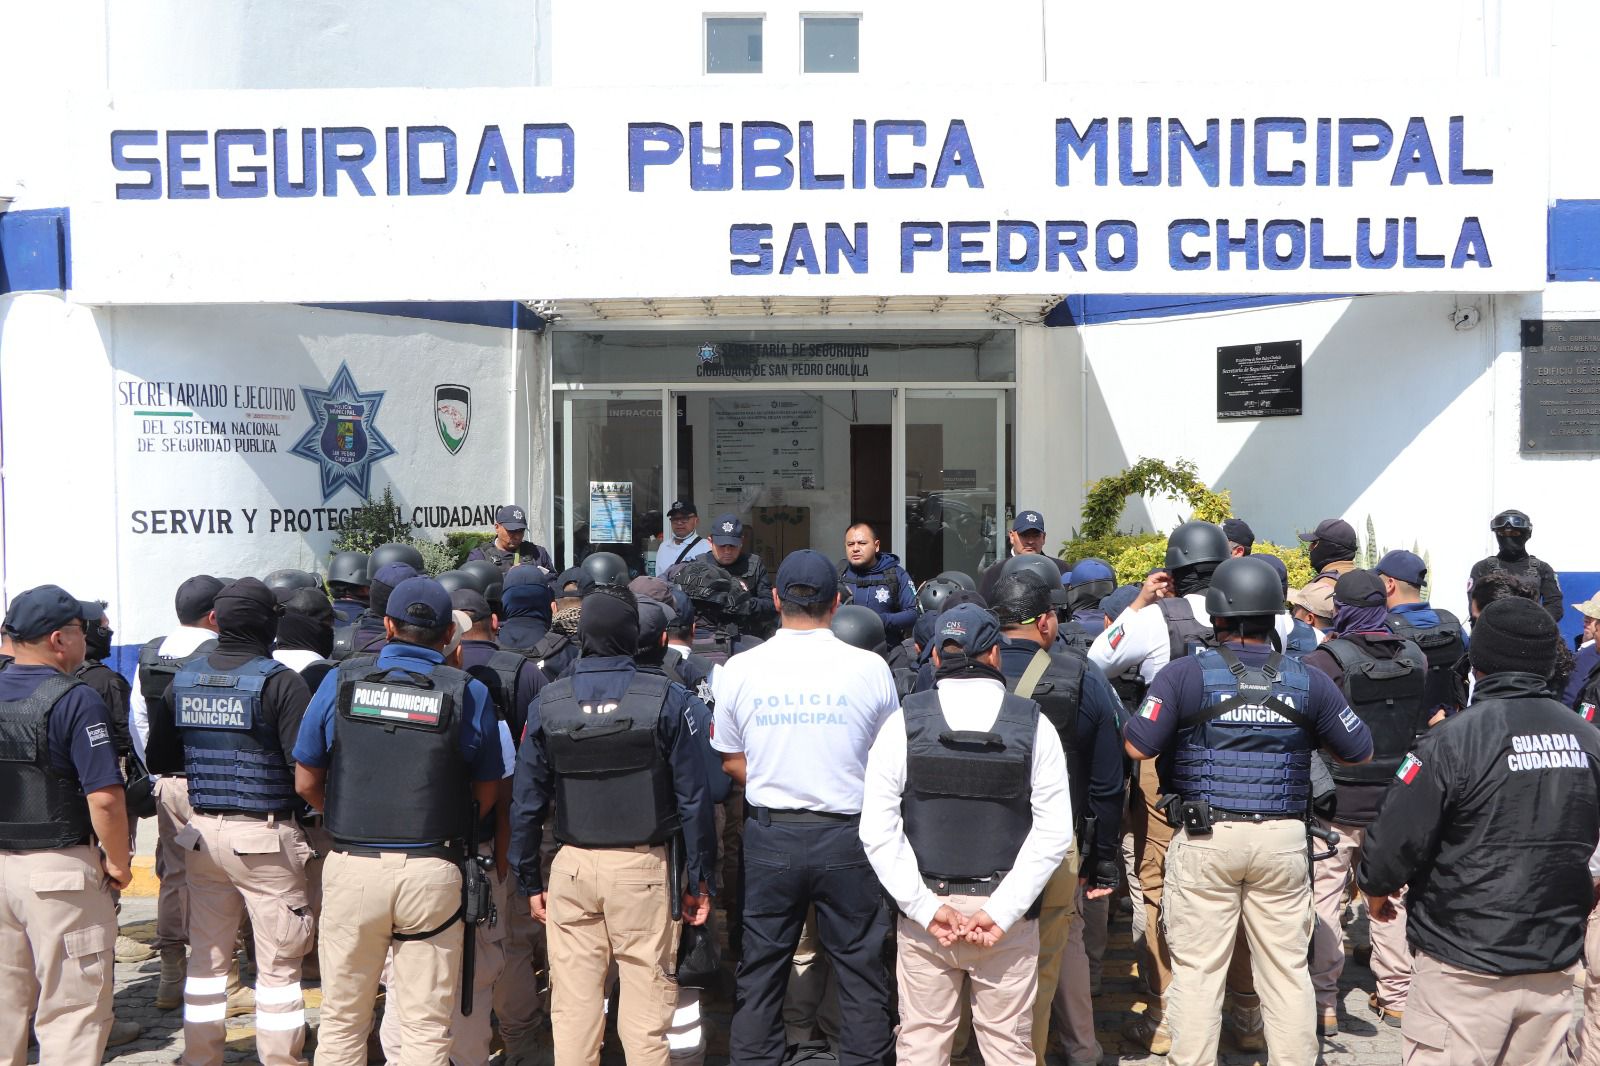 Elementos de la Secretaría de Seguridad Pública de San Pedro Cholula recibiendo instrucciones